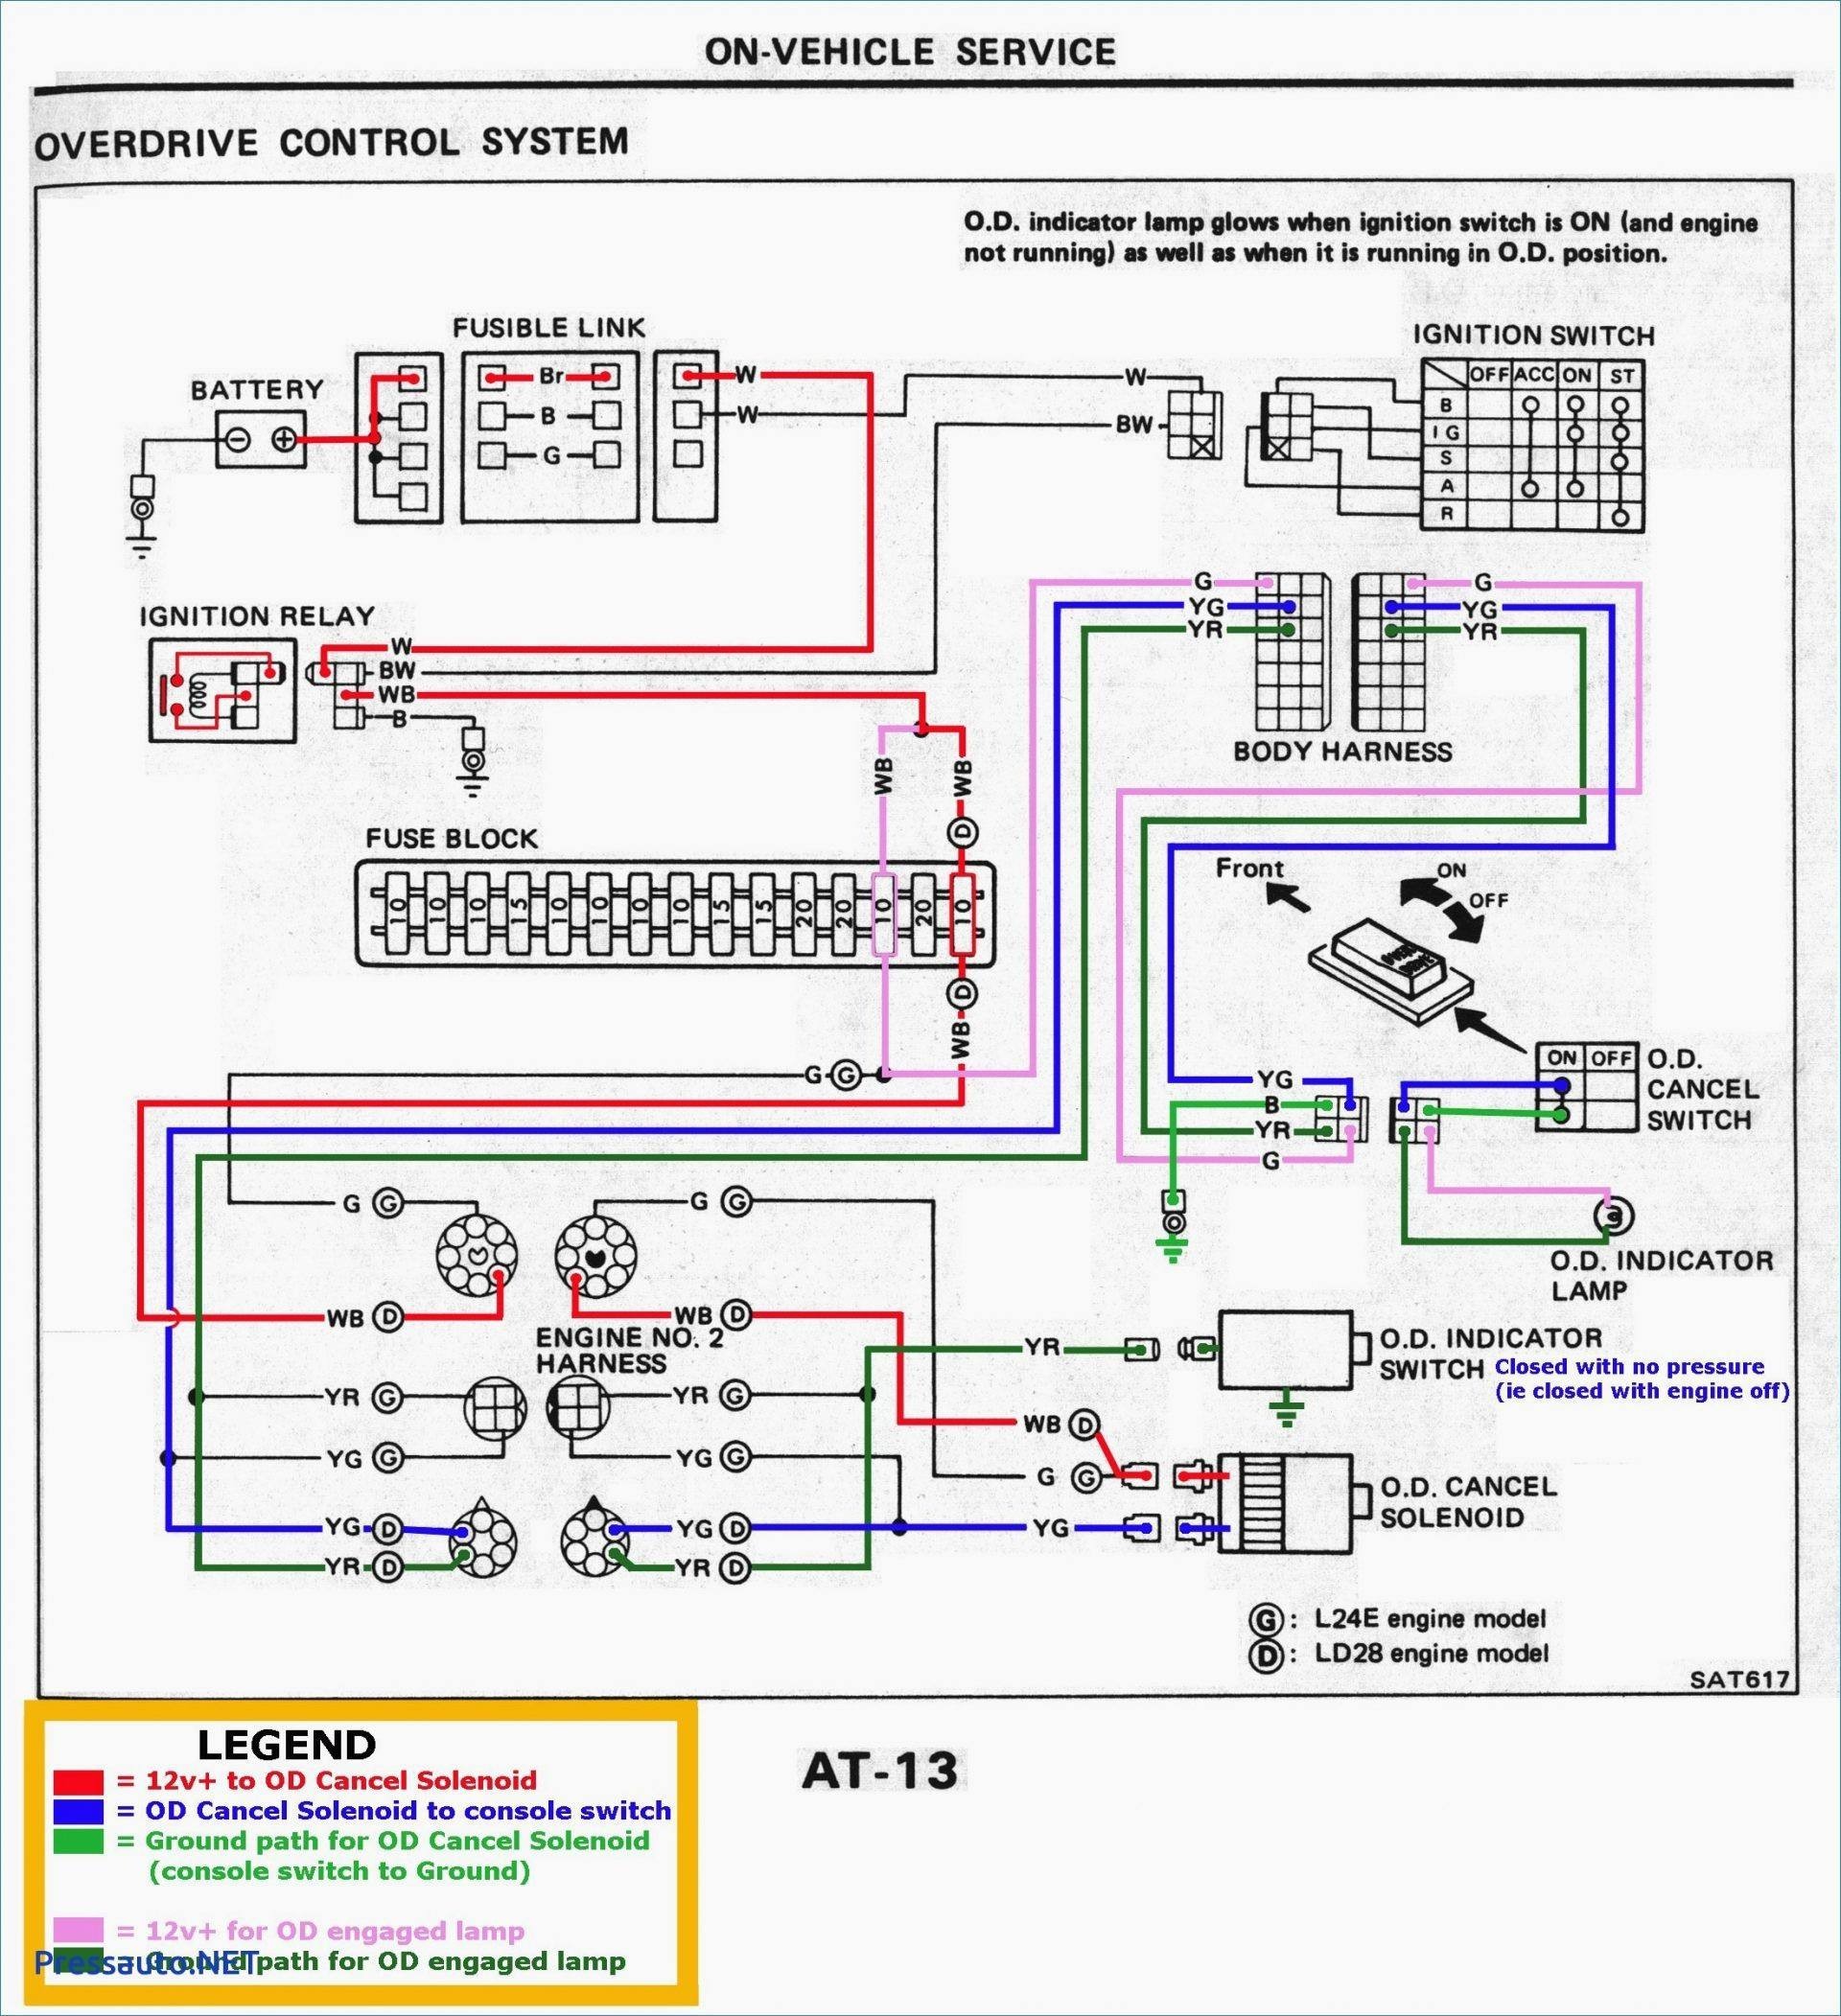 98 Dodge Neon Engine Diagram 2001 Chevrolet Silverado Trailer Wiring Diagram 2018 2002 Chevy Of 98 Dodge Neon Engine Diagram